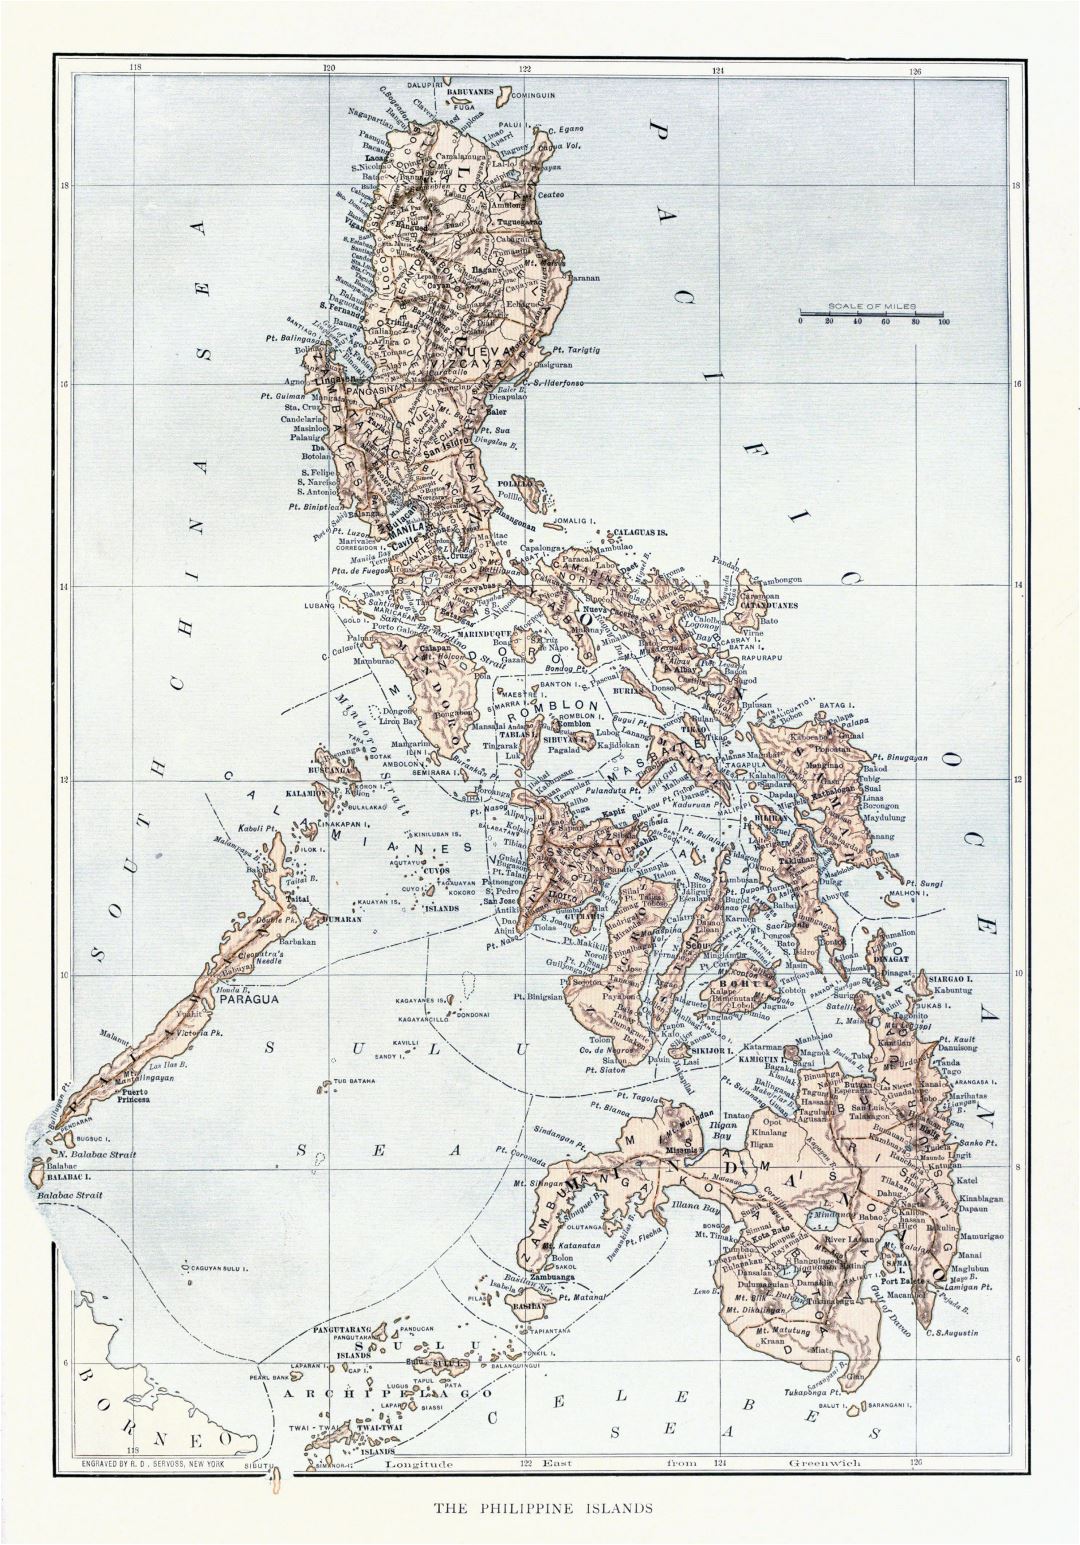 Grande detallado antiguo mapa político y administrativo de Filipinas con alivio